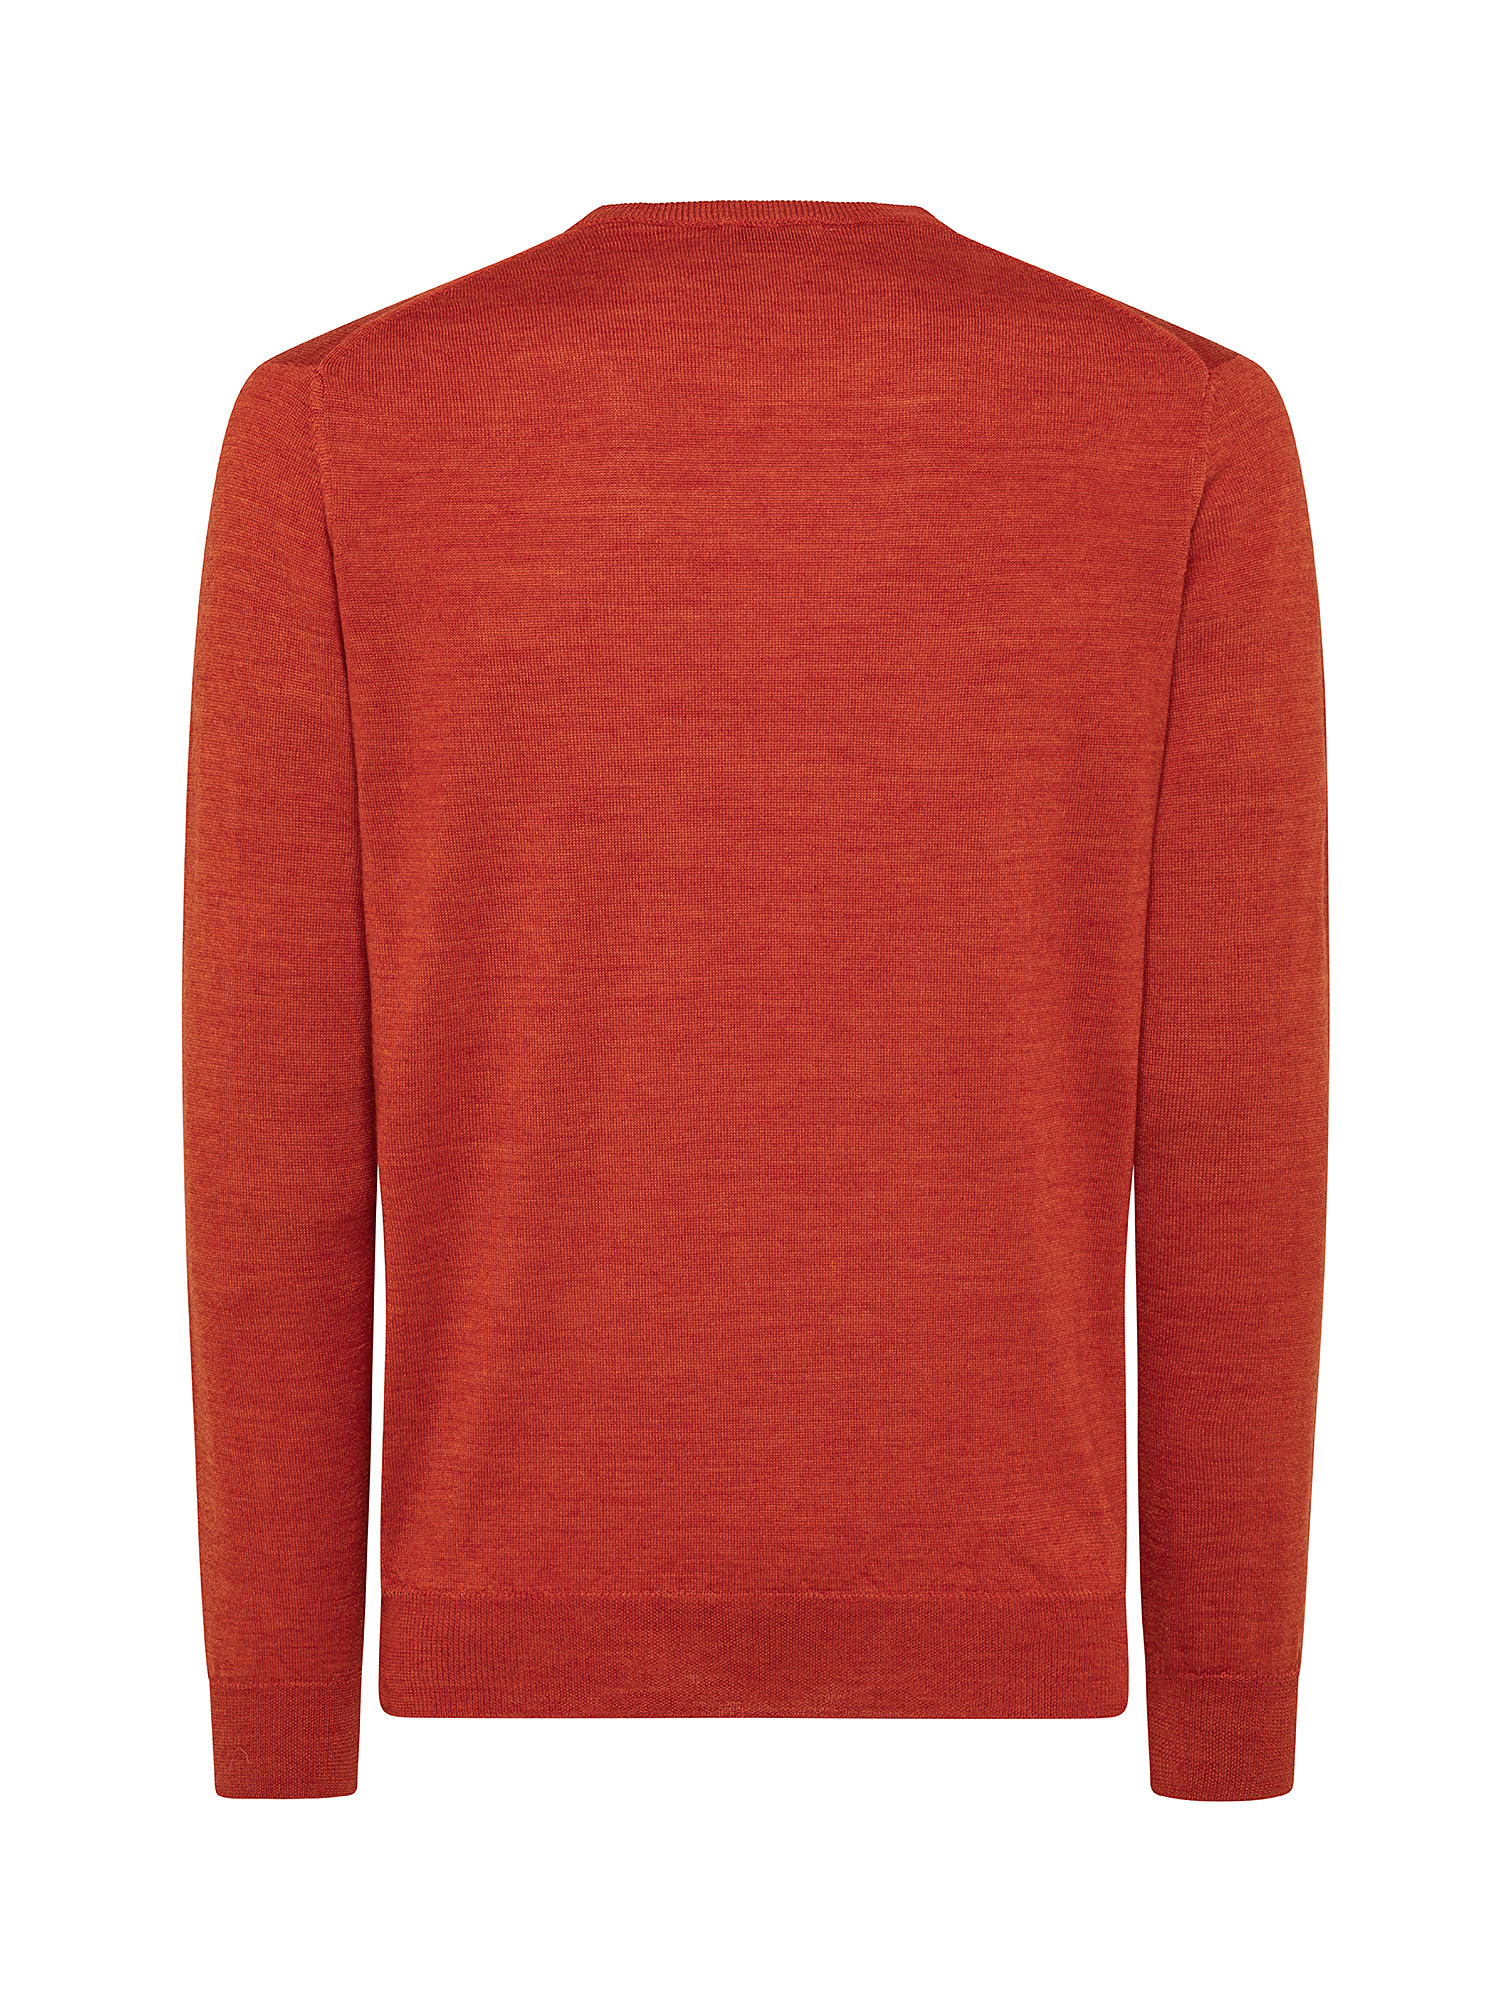 Merino Blend crewneck sweater - Machine washable, Orange, large image number 1